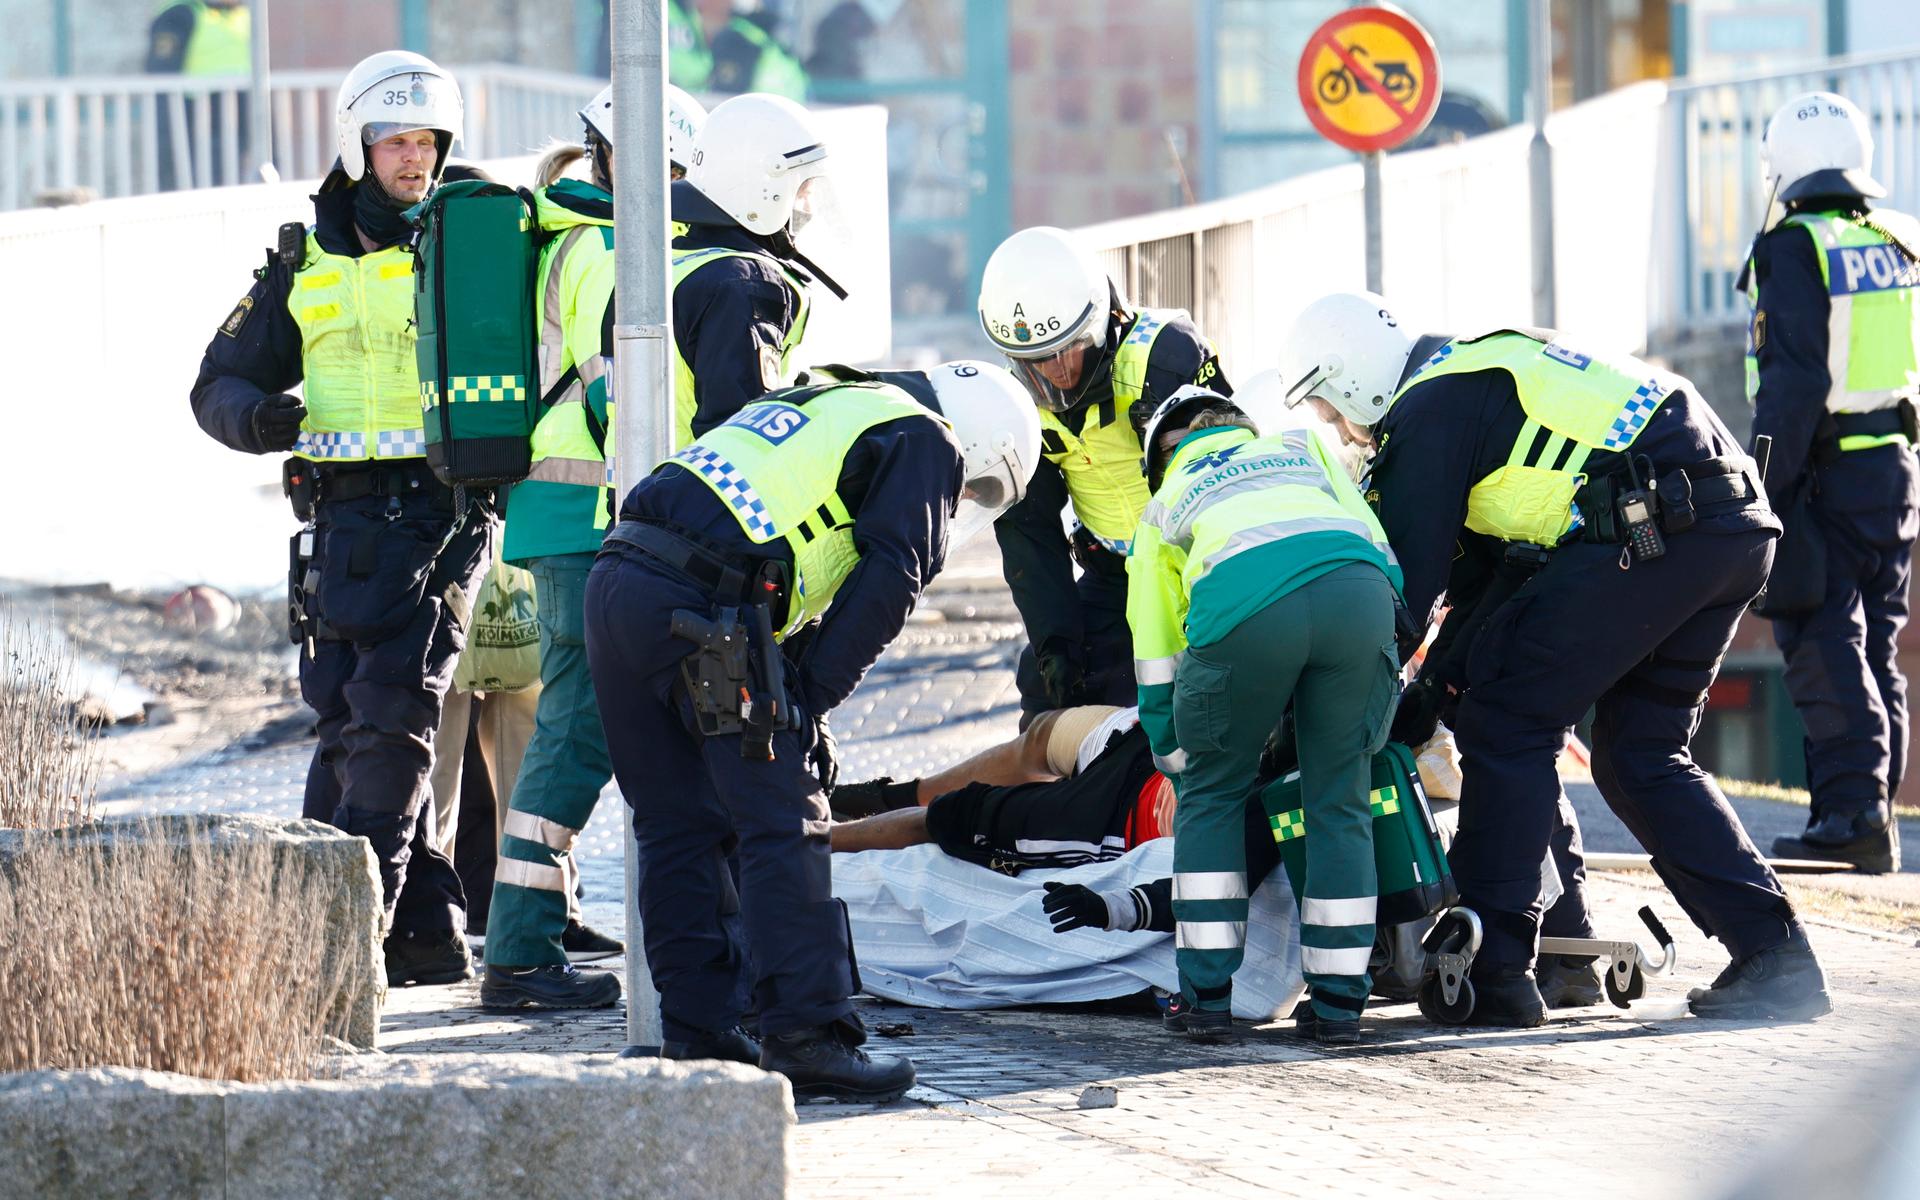 Polis och ambulanspersonal lägger en skadad man som skjutits i benet på en bår under upploppen i Navestad i Norrköping på påskdagen.Oroligheterna utlöstes av att den högerextrema provokatören Rasmus Paludan har sagt att han ska återvända till Östergötland för nya demonstrationer under dagen.